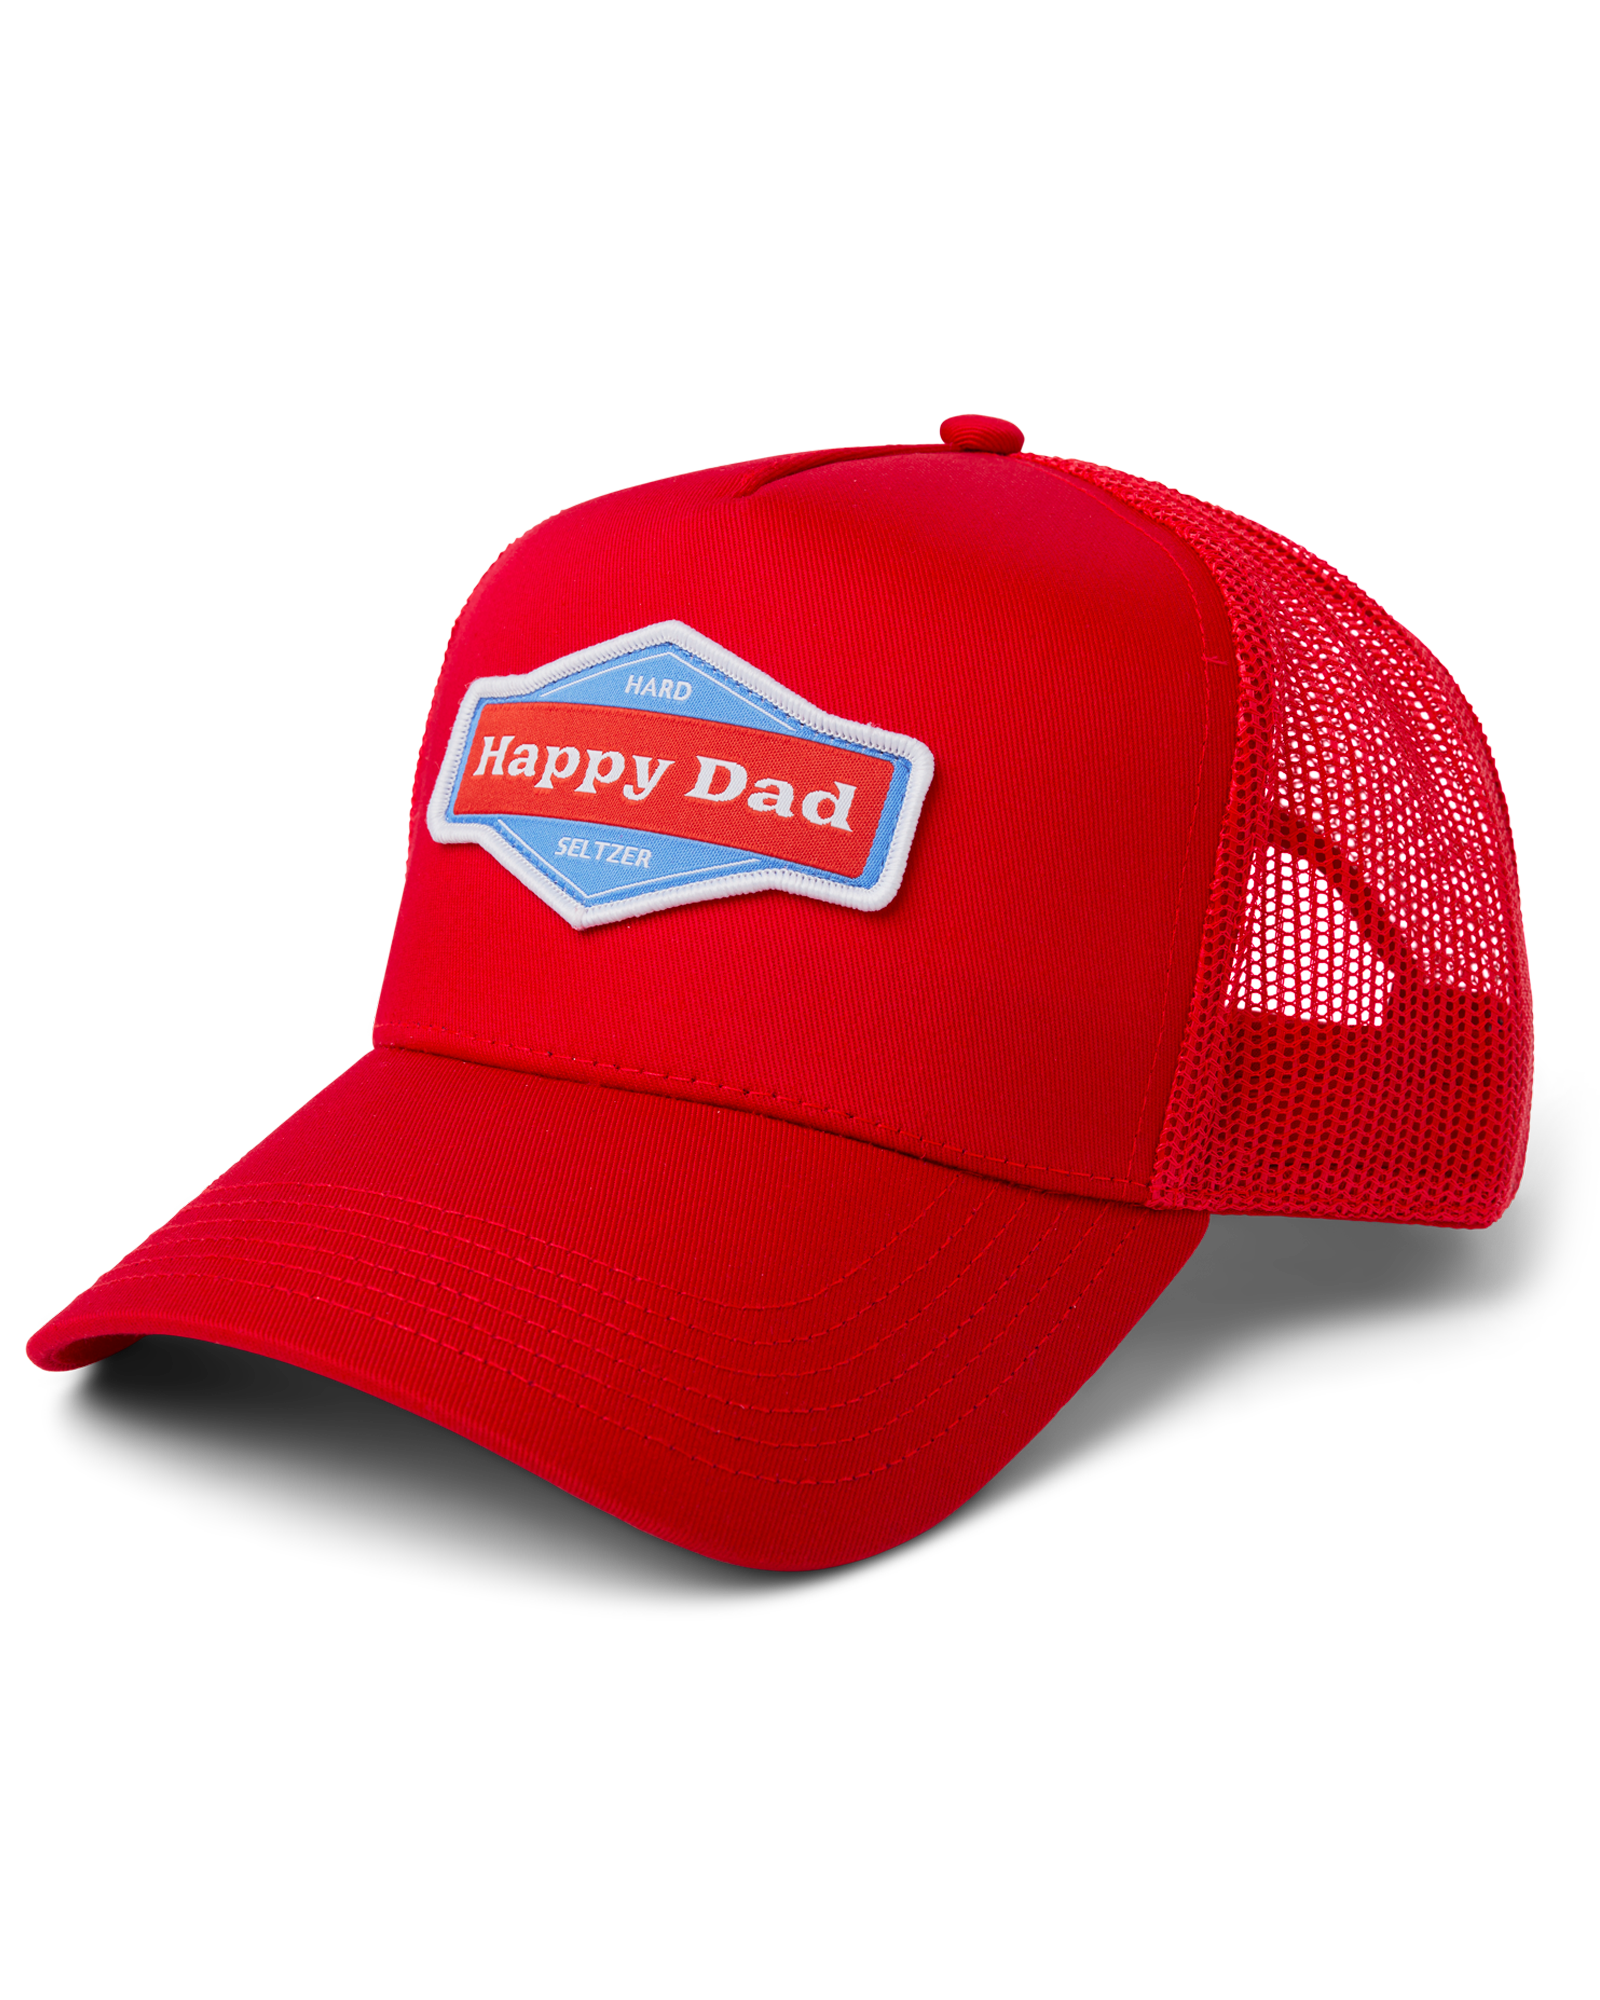 Happy Dad Trucker Hat (Red)